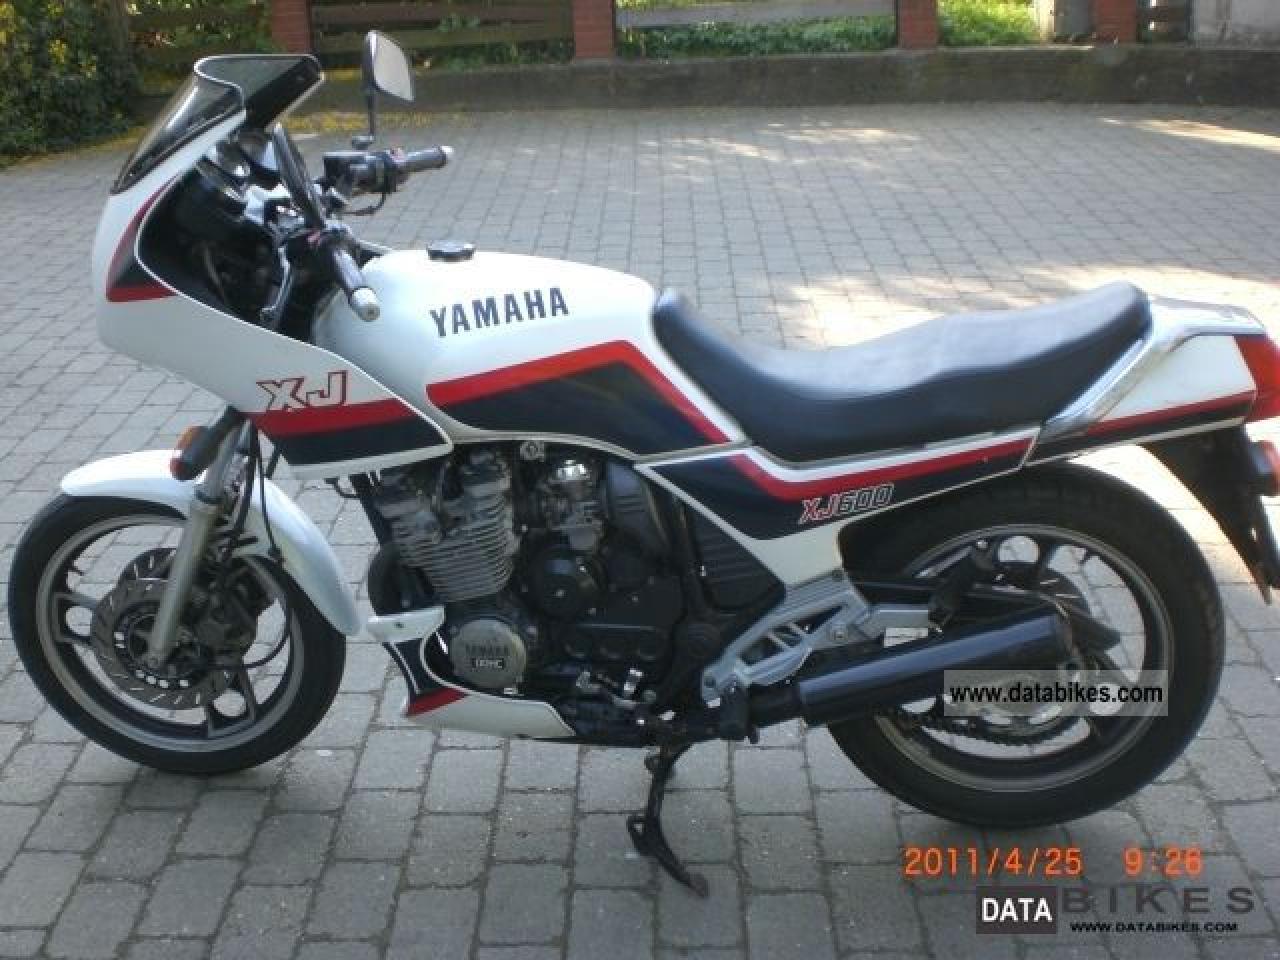 Yamaha XJ 600 1989 photo - 2